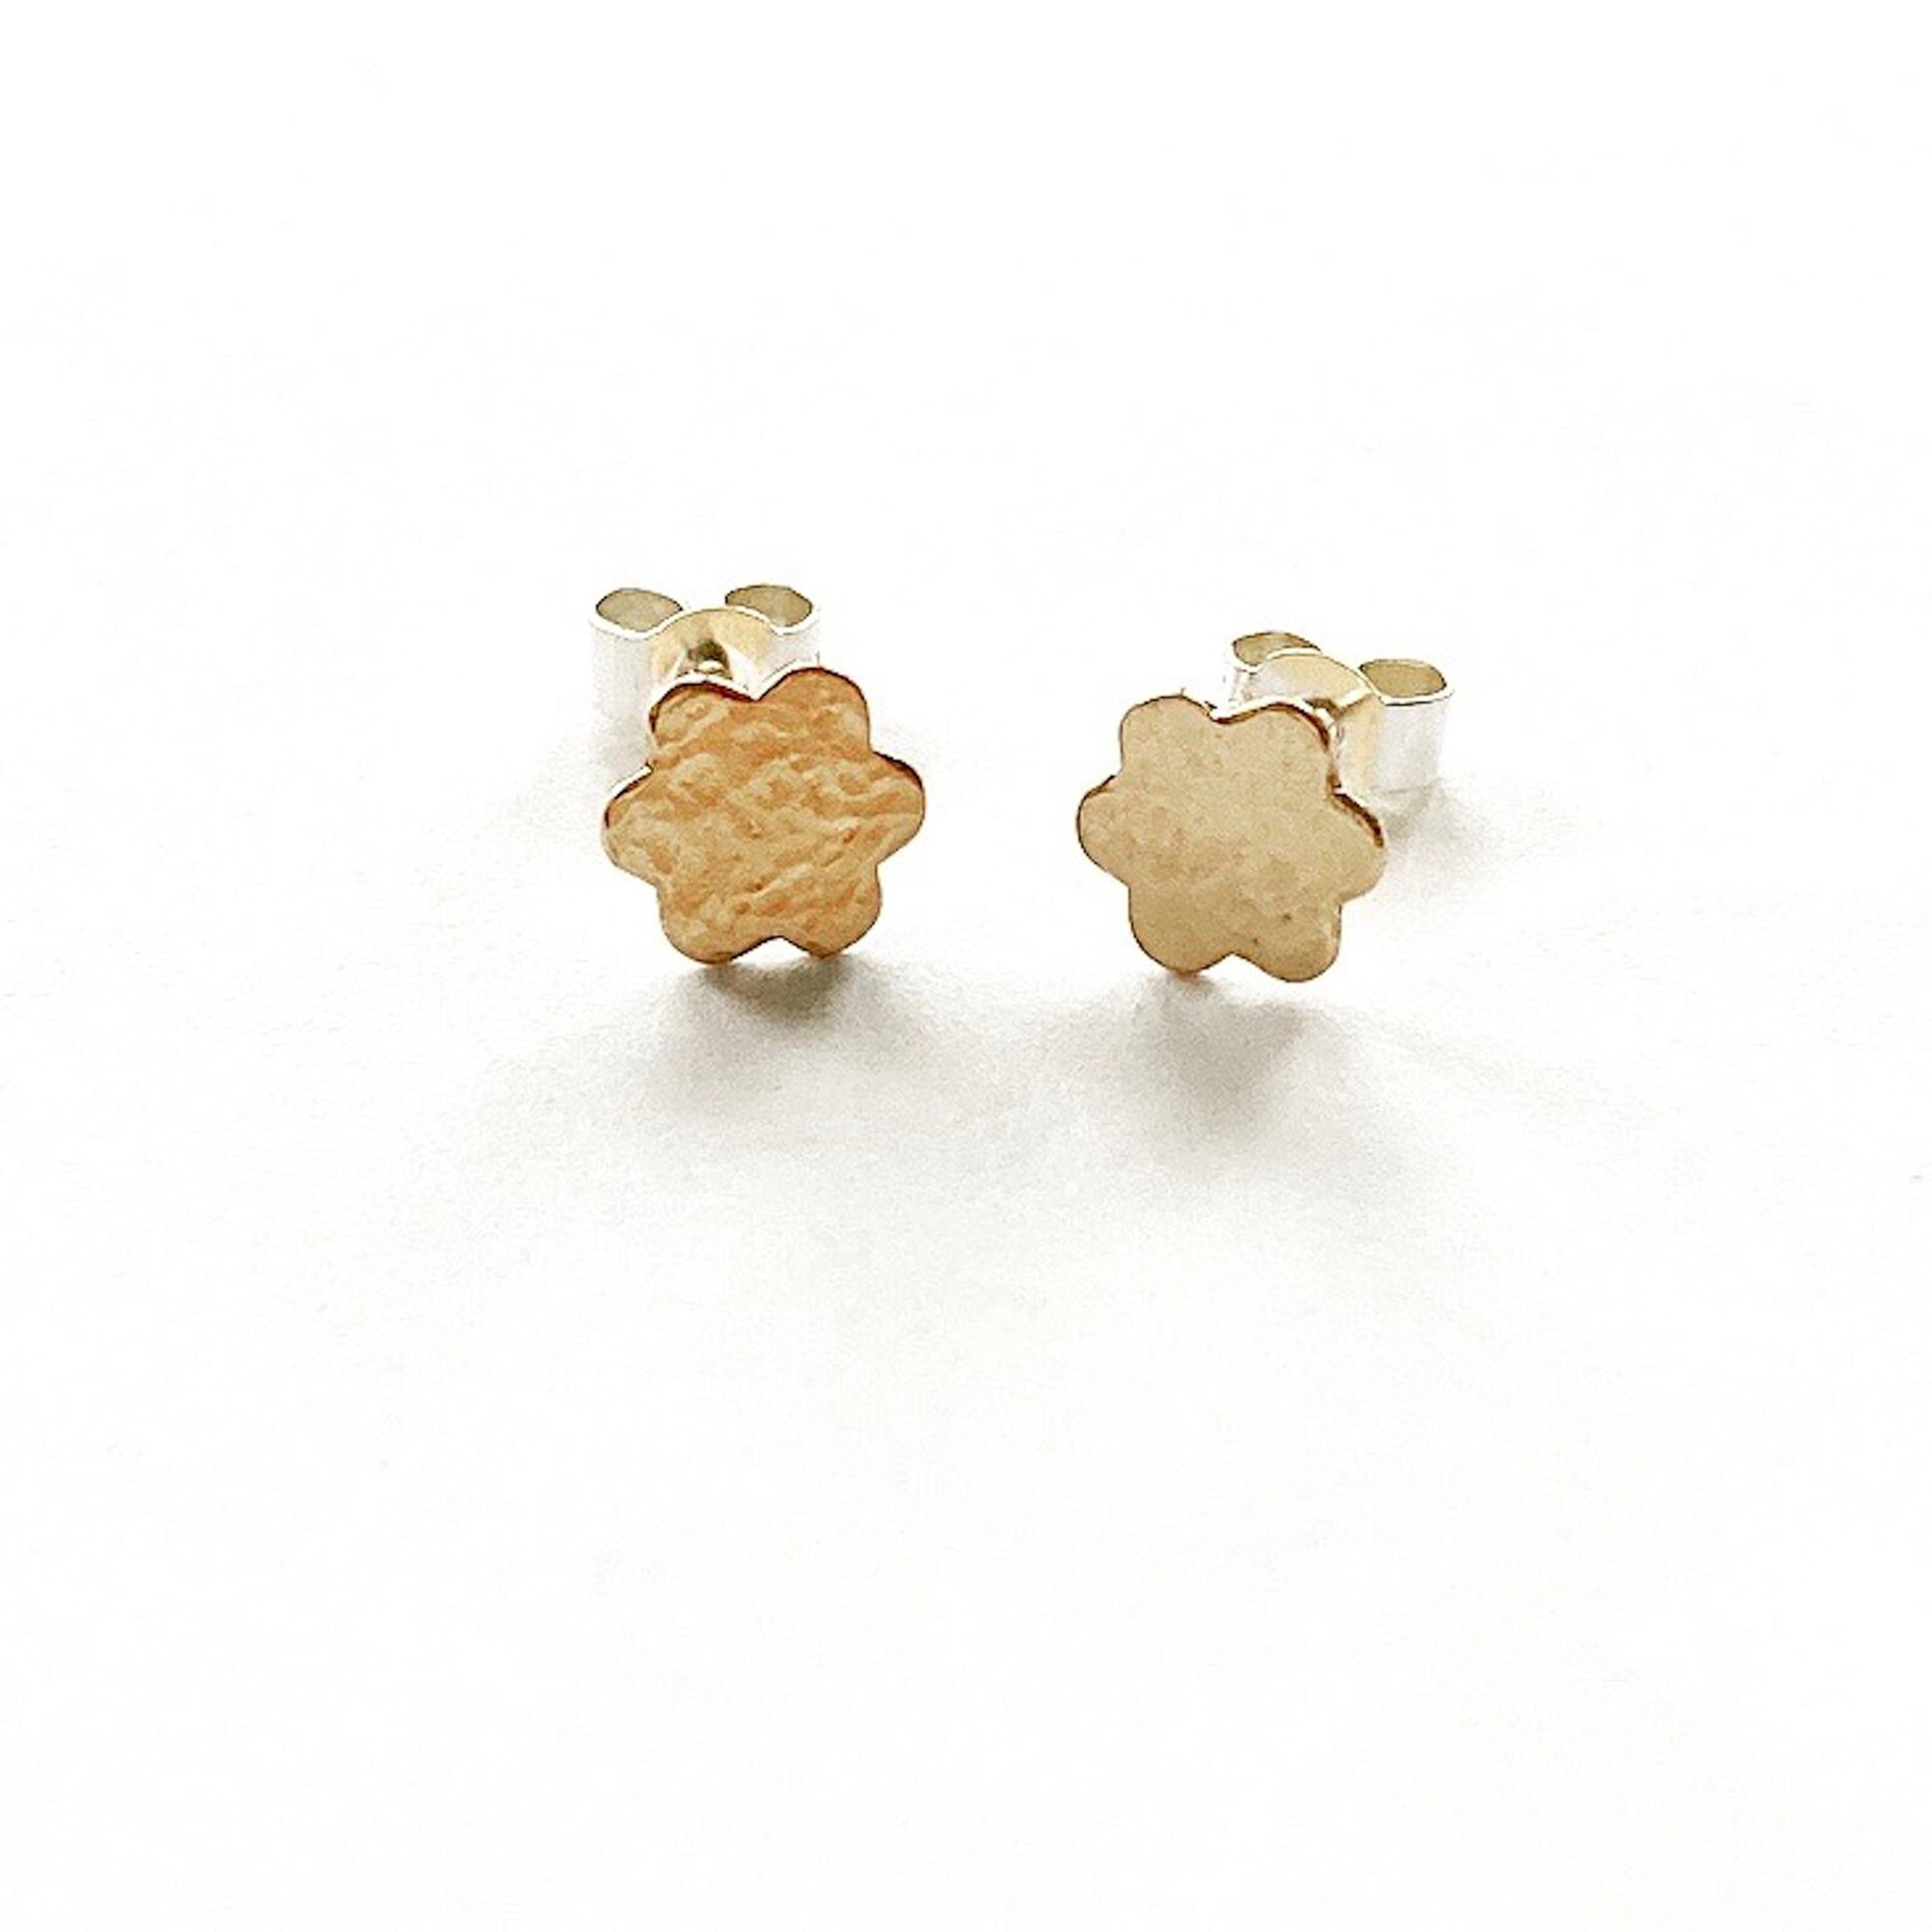 Gold filled silver flower stud earrings